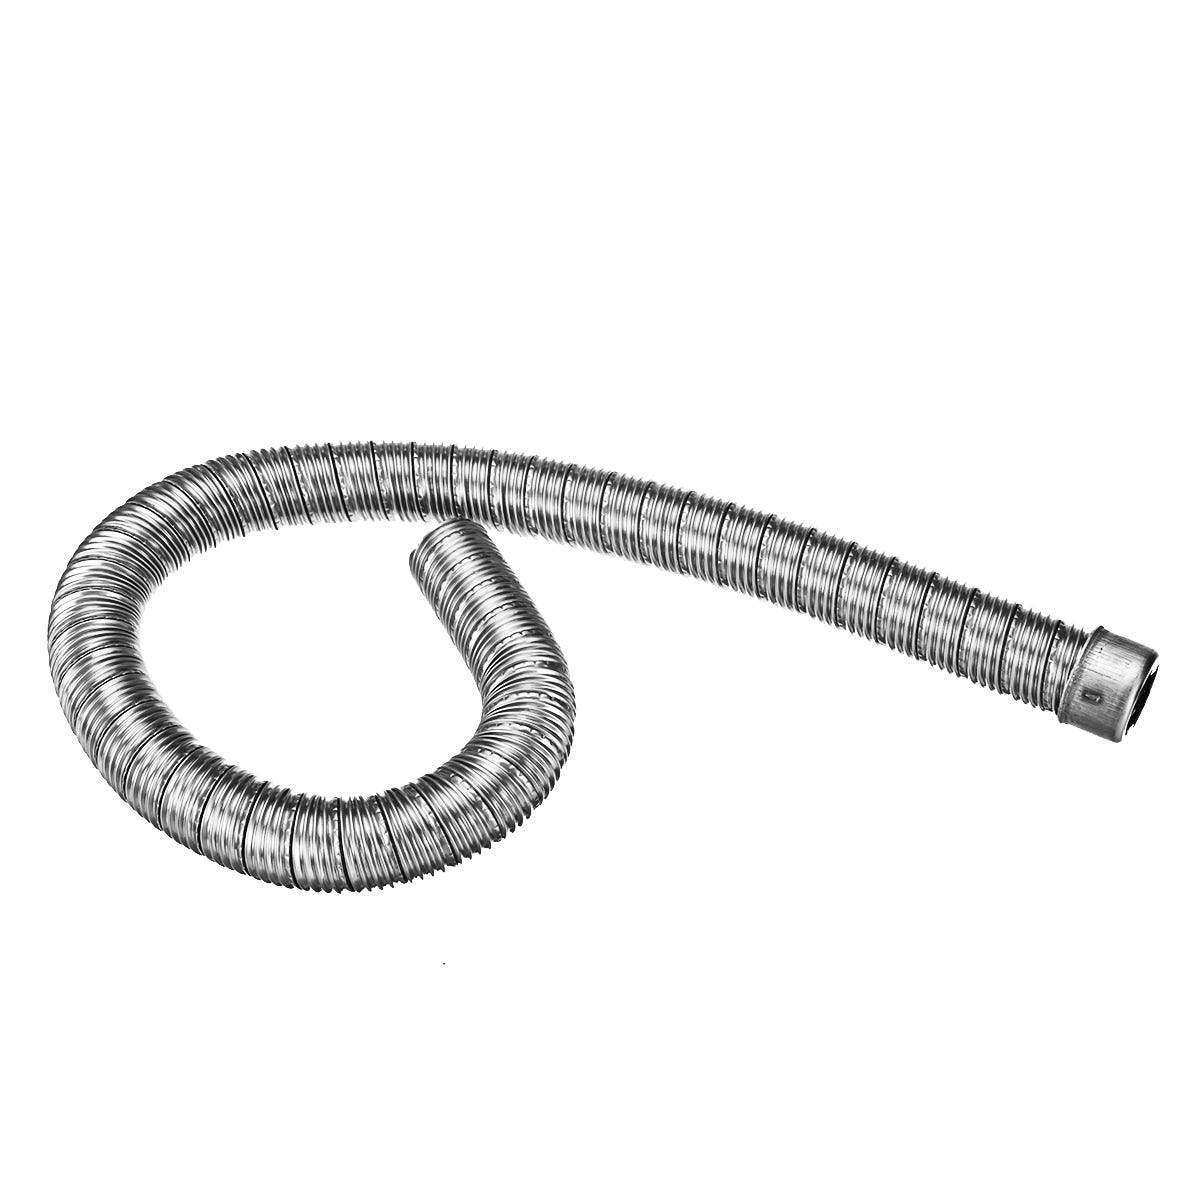 PER TUBO DI scarico Webasto 25 mm tubo flessibile in acciaio inox tubo di  scarico riscaldamento autonomo 0,6 m EUR 9,65 - PicClick IT